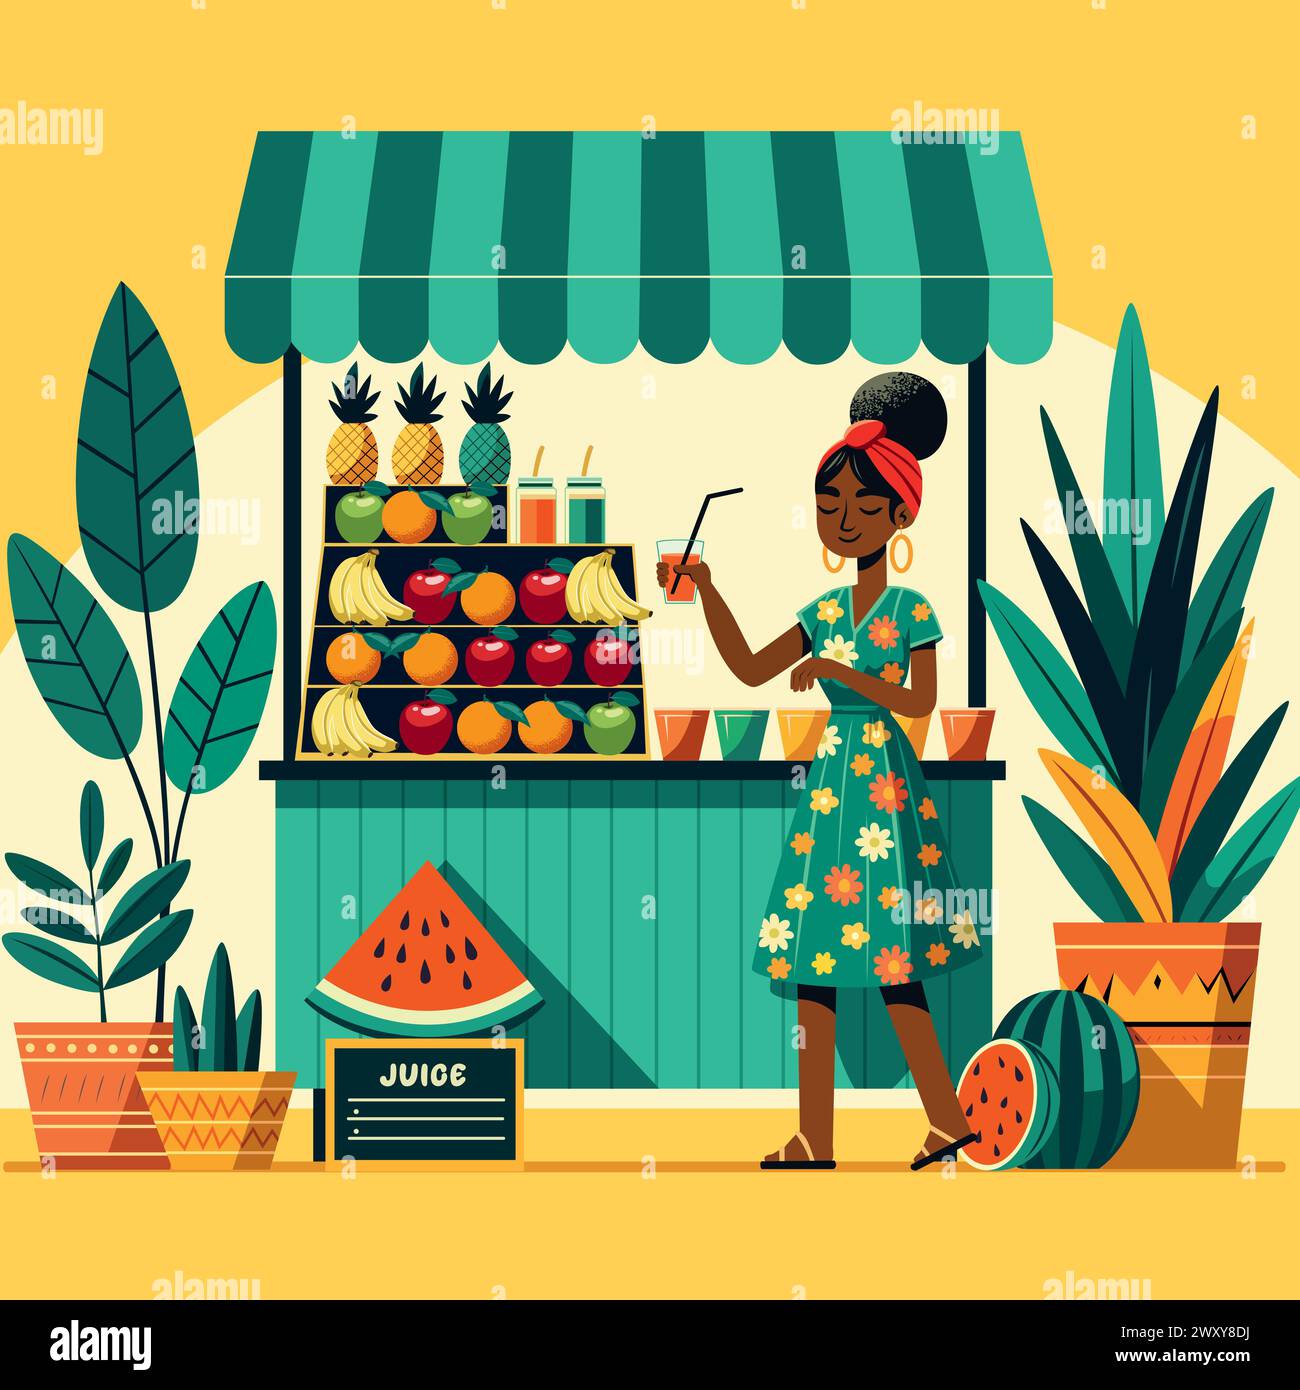 Illustrazione dal design piatto di una donna africana che serve succo di frutta in una vivace strada, circondata da piante. Illustrazione Vettoriale